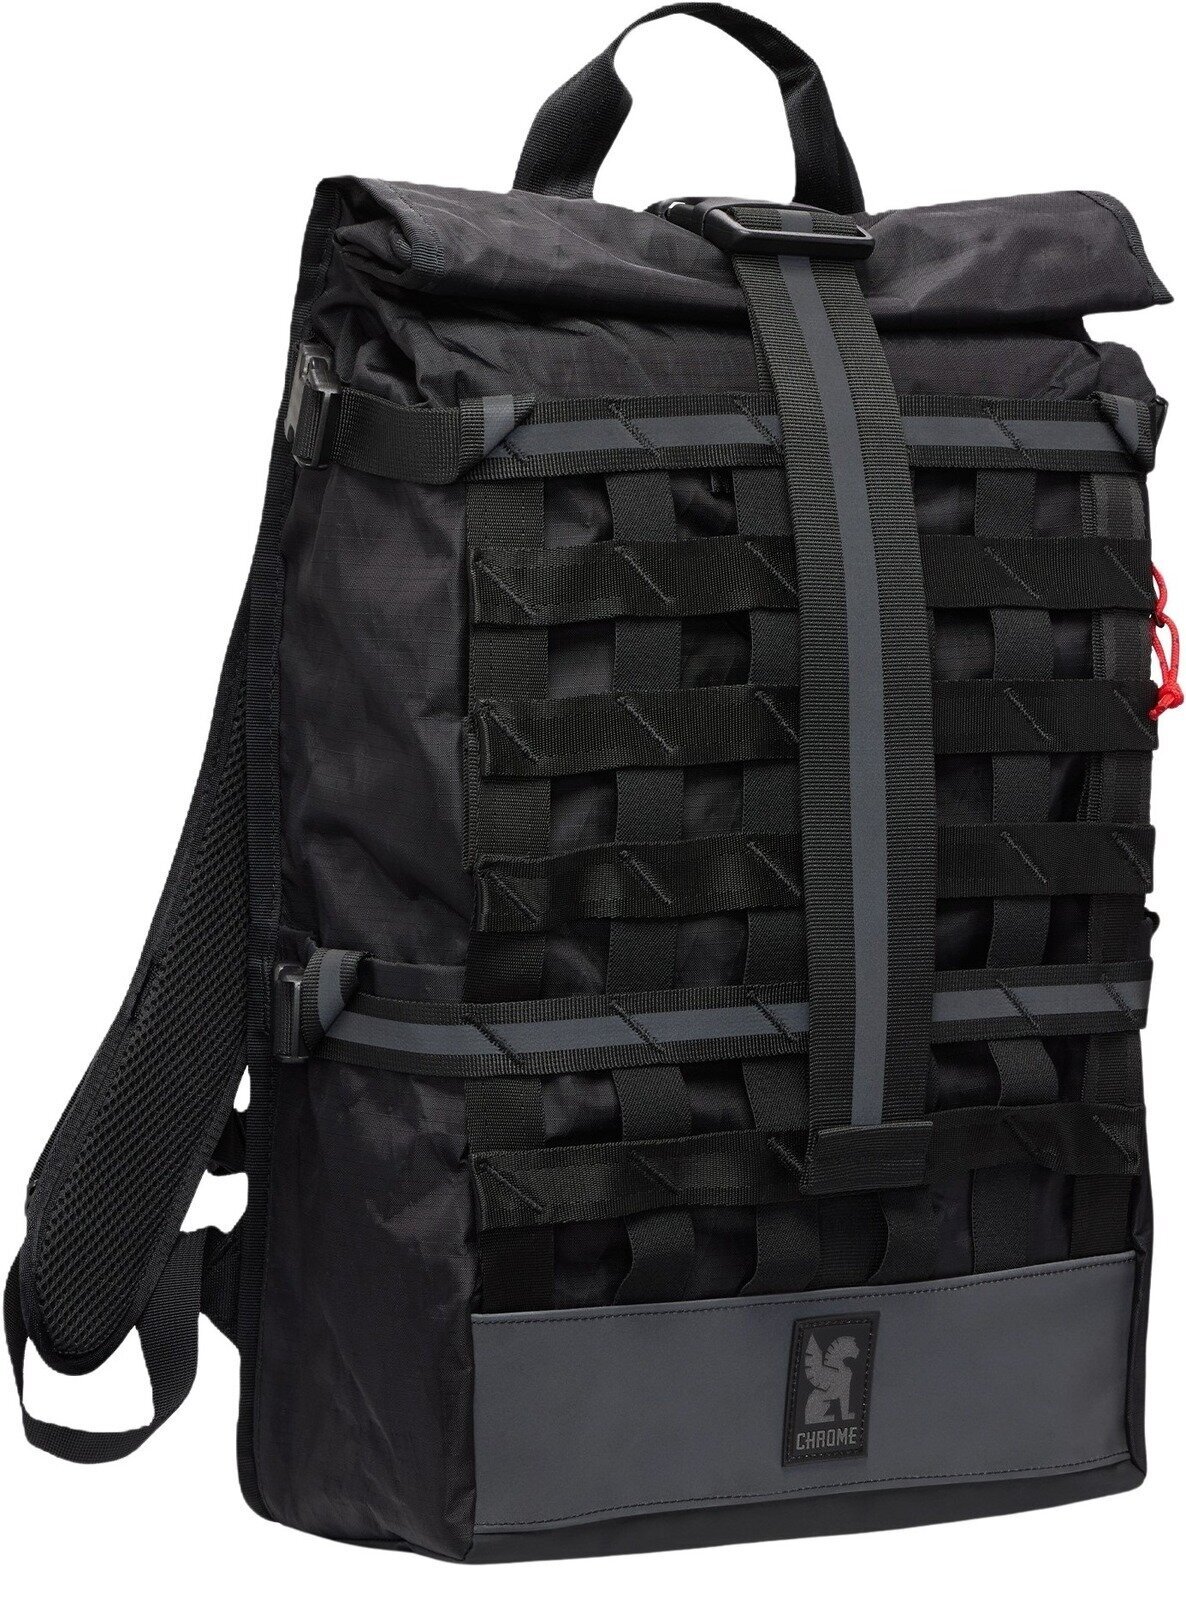 Lifestyle Backpack / Bag Chrome Barrage Backpack Reflective Black 22 L Backpack